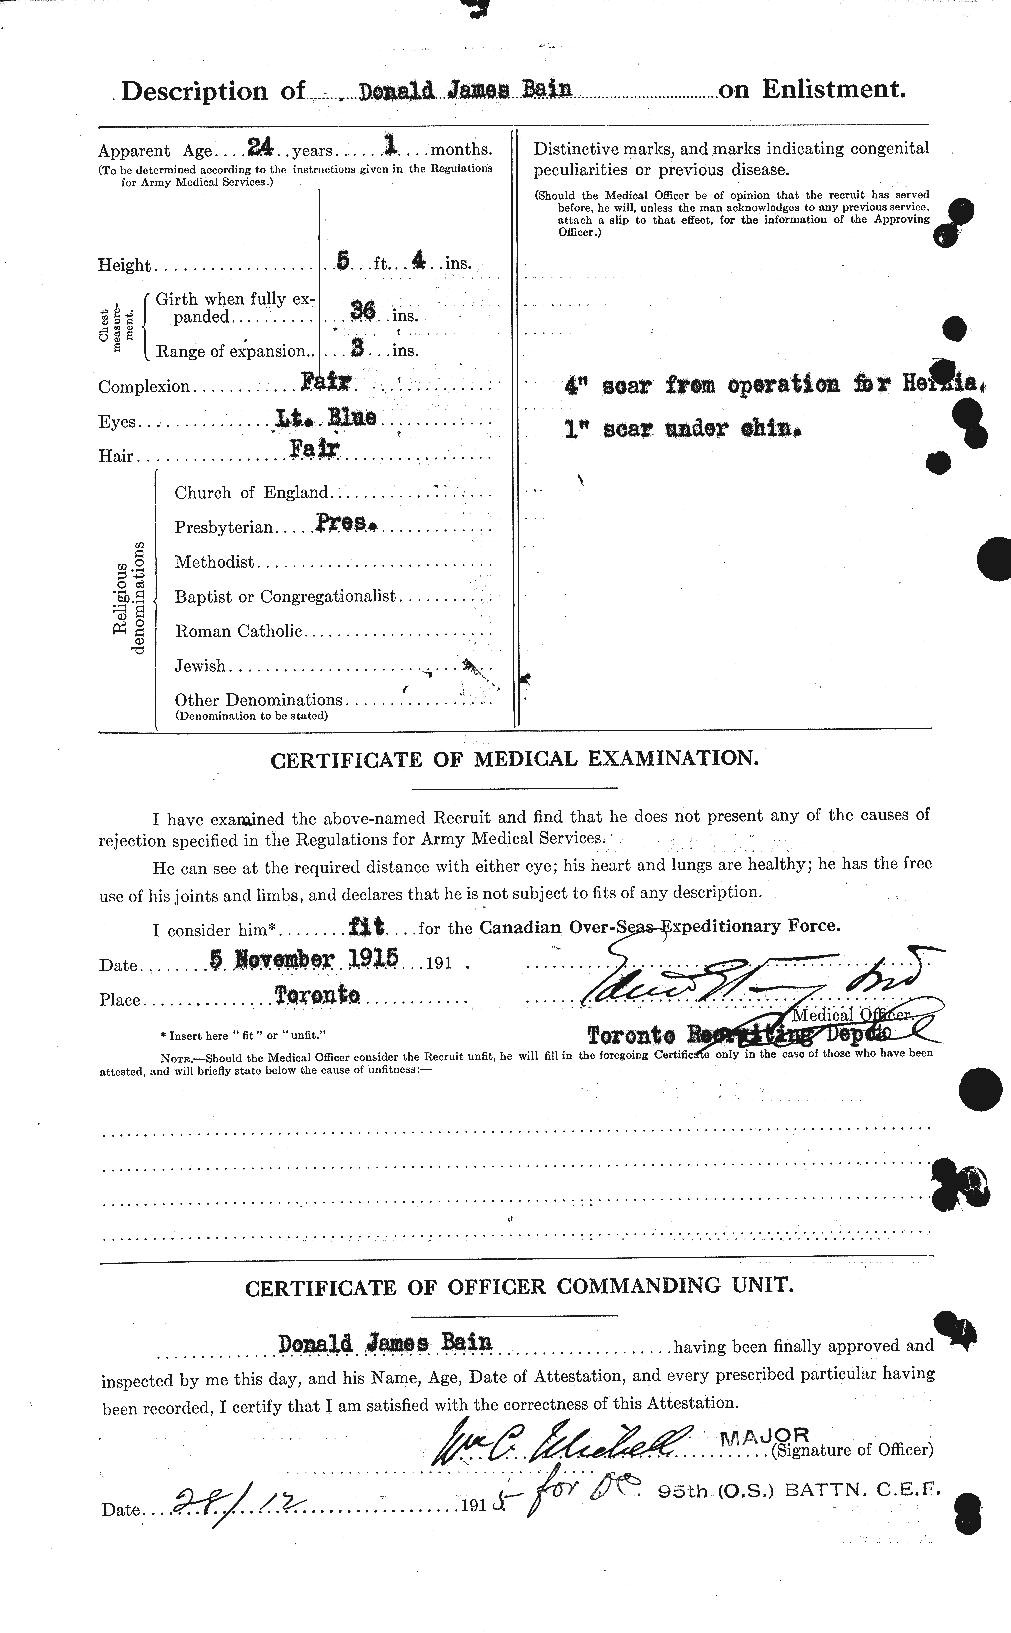 Dossiers du Personnel de la Première Guerre mondiale - CEC 226145b